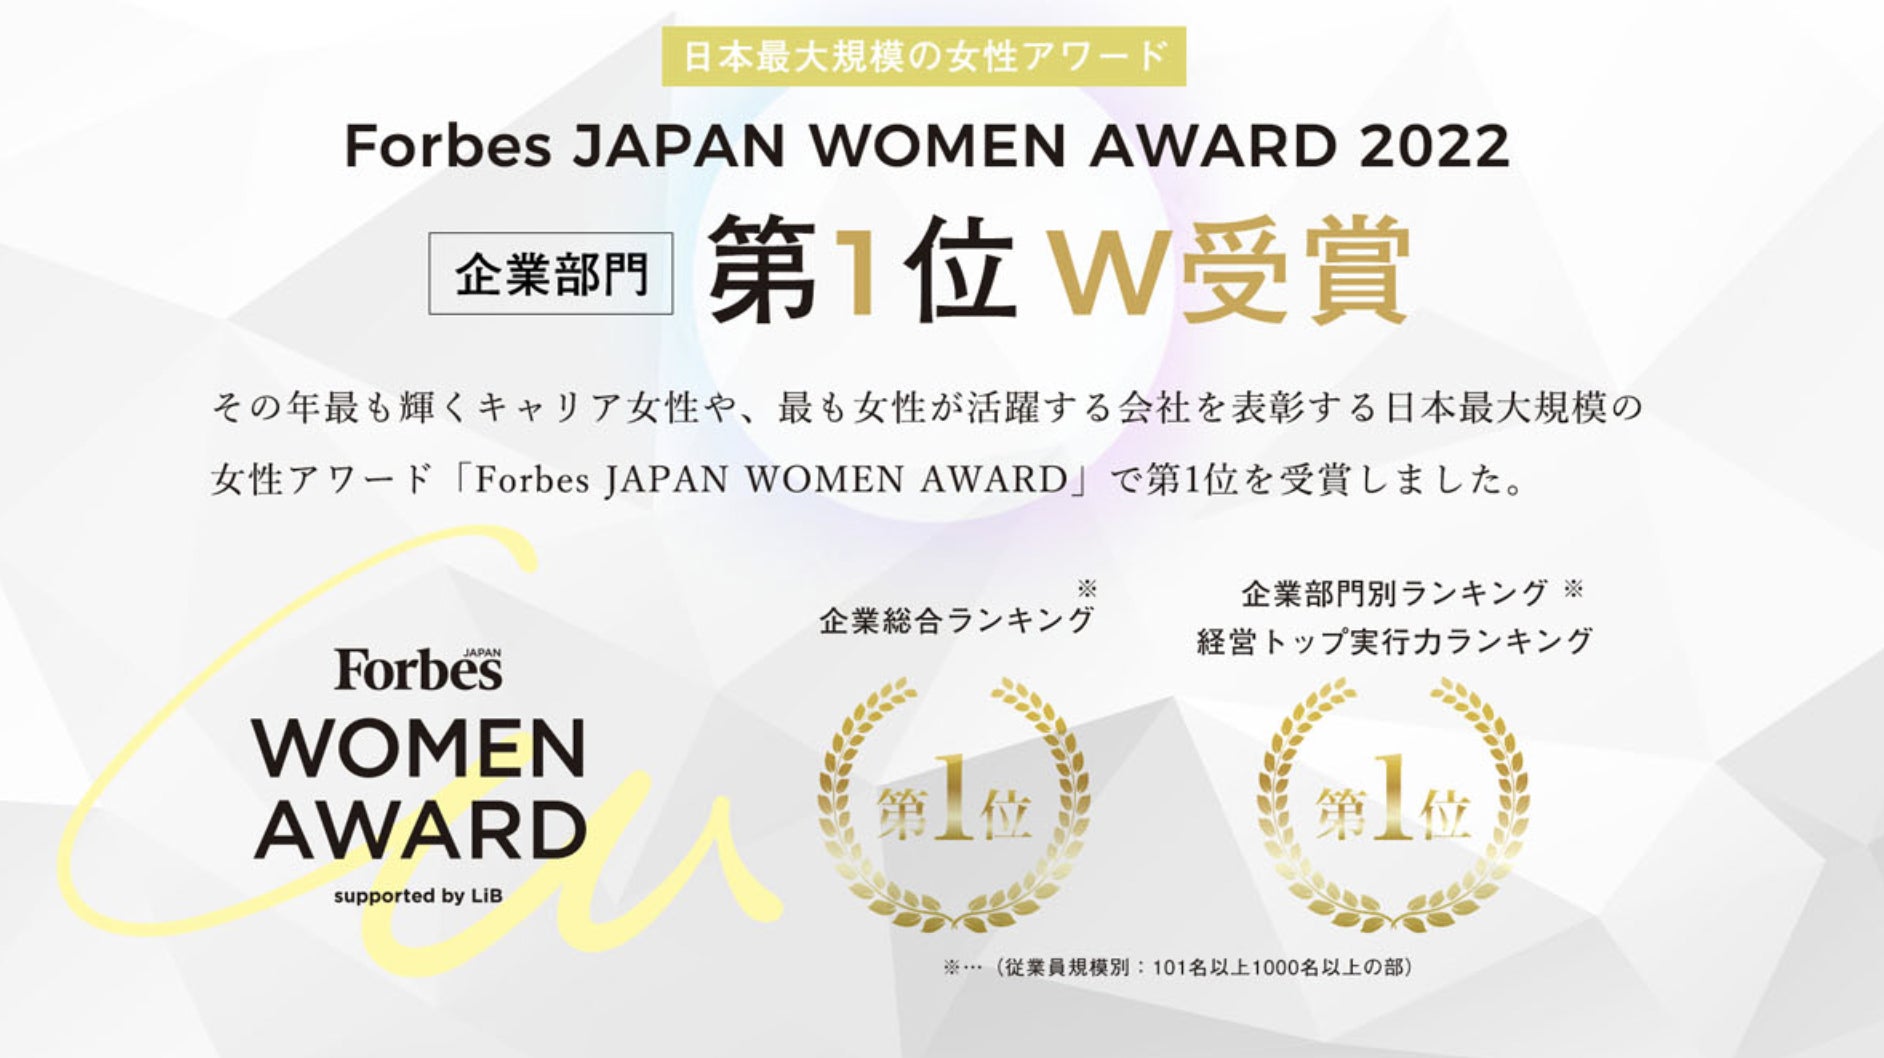 【株式会社Mahalo】Forbes JAPAN WOMAN AWARD 2022